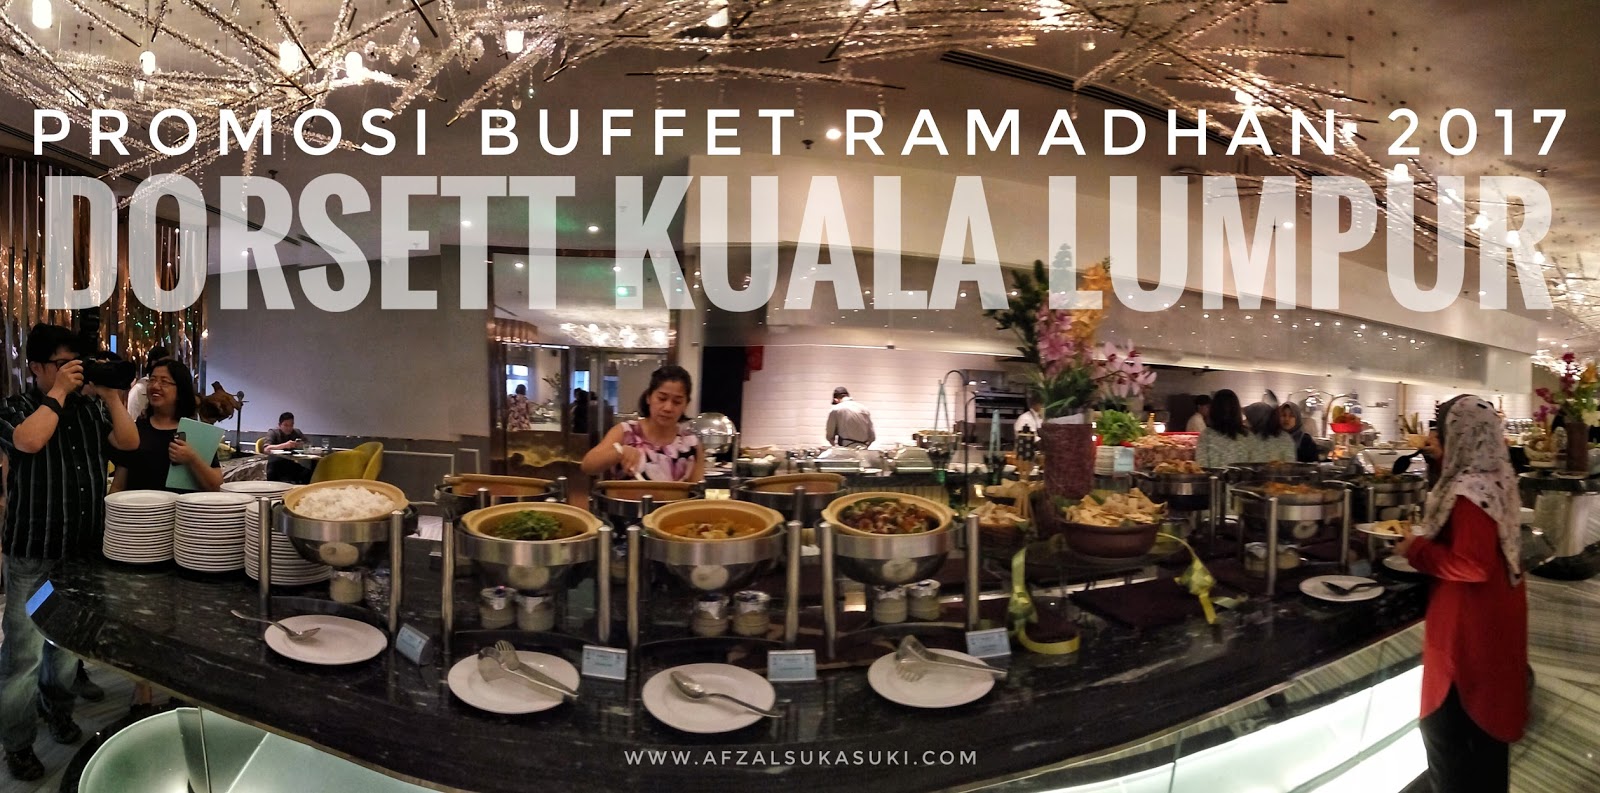 Promosi Buffet Ramadhan 2017 | Dorsett Kuala Lumpur